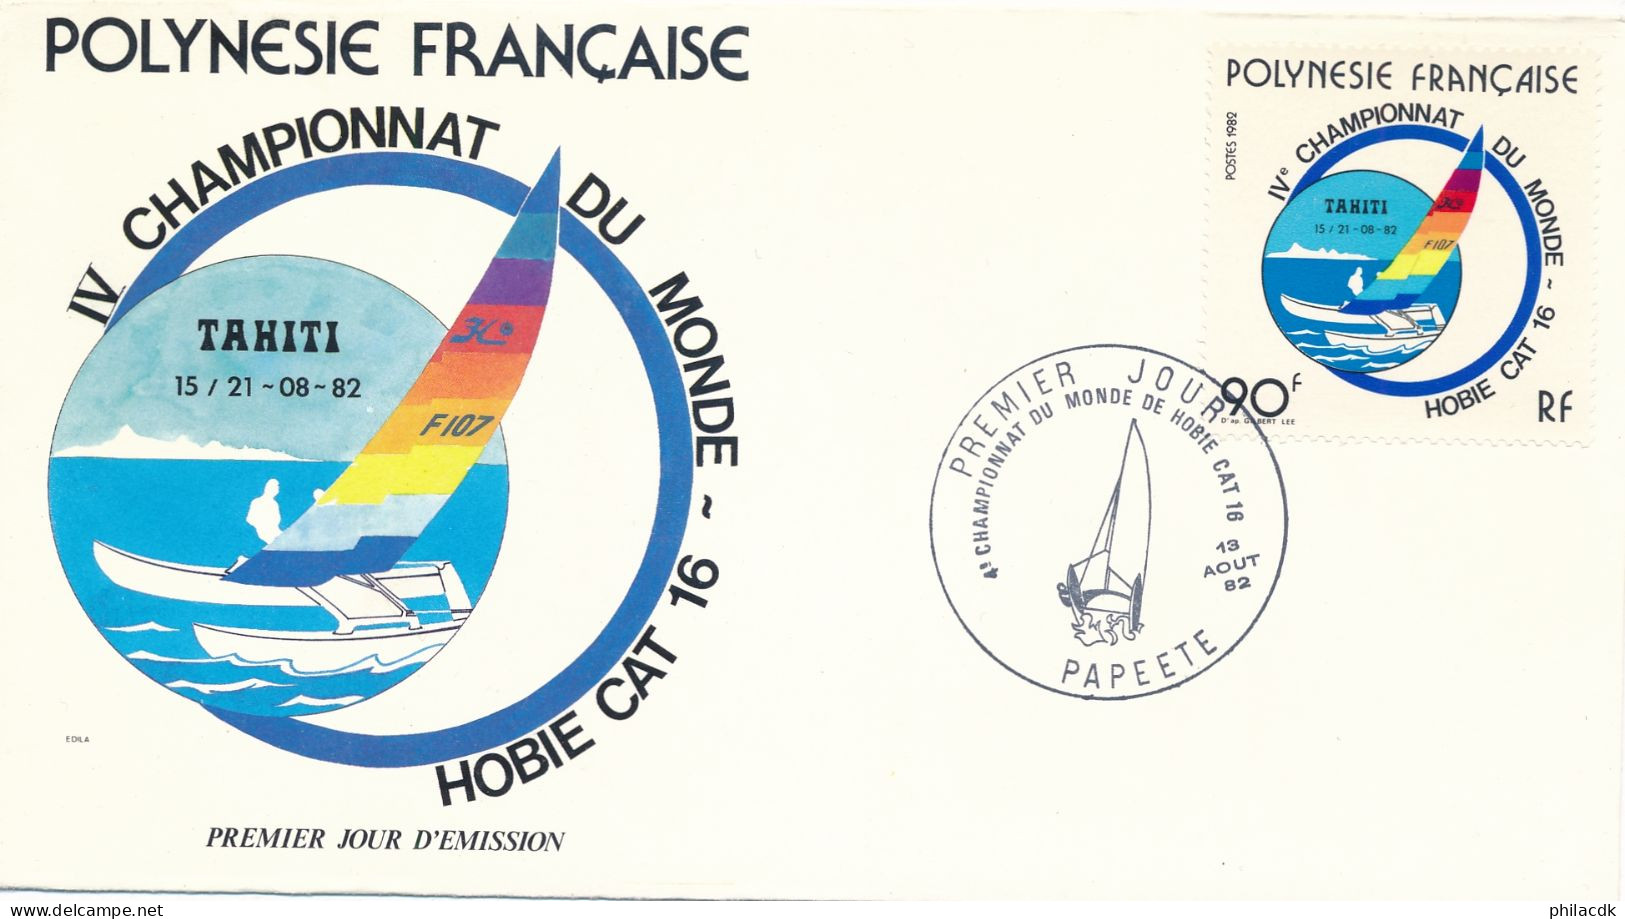 POLYNESIE FRANCAISE - ENVELOPPE PREMIER JOUR  DU 13 AOUT 1982 4EME CHAMPIONNAT DU MONDE DE HOBBIE CAT 16 - Sailing